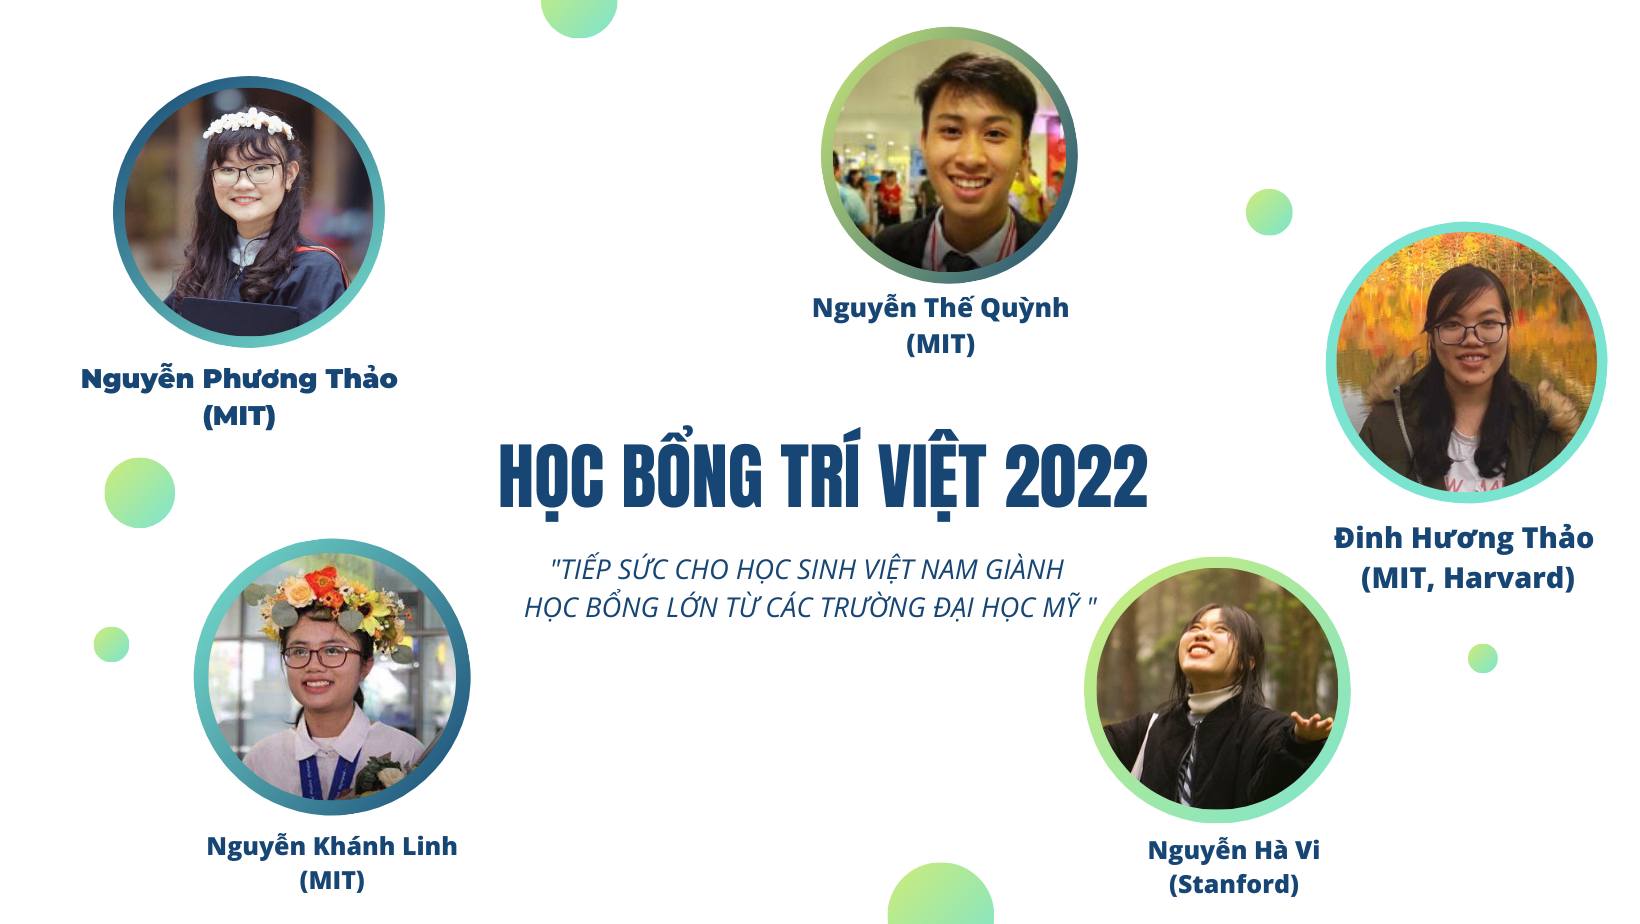 Học bổng Tài năng Trí Việt 2022 chính thức khởi động